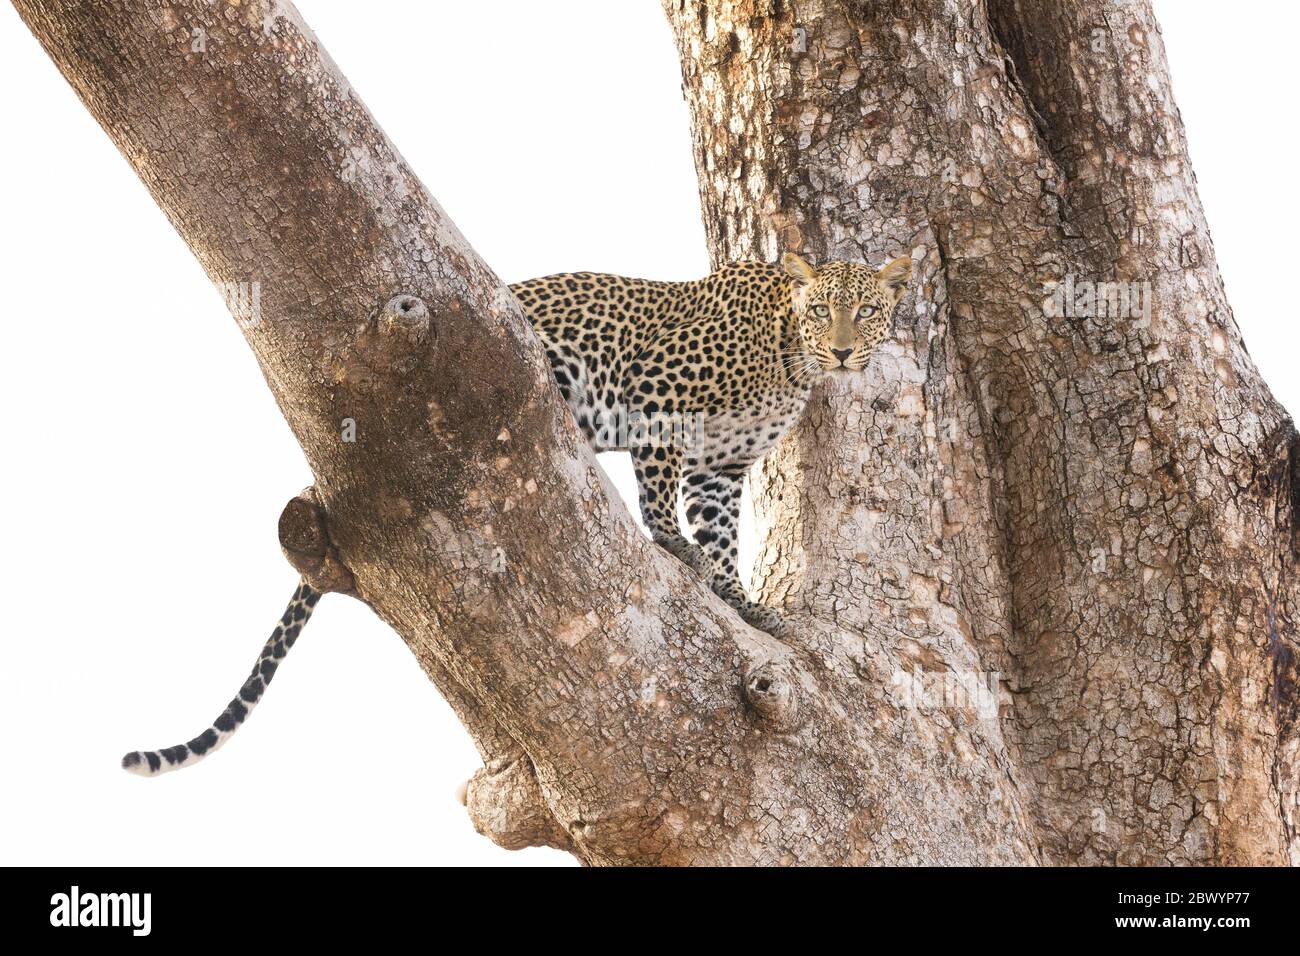 Léopard femelle adulte dans un arbre isolé contre un fond blanc Samburu Kenya Banque D'Images